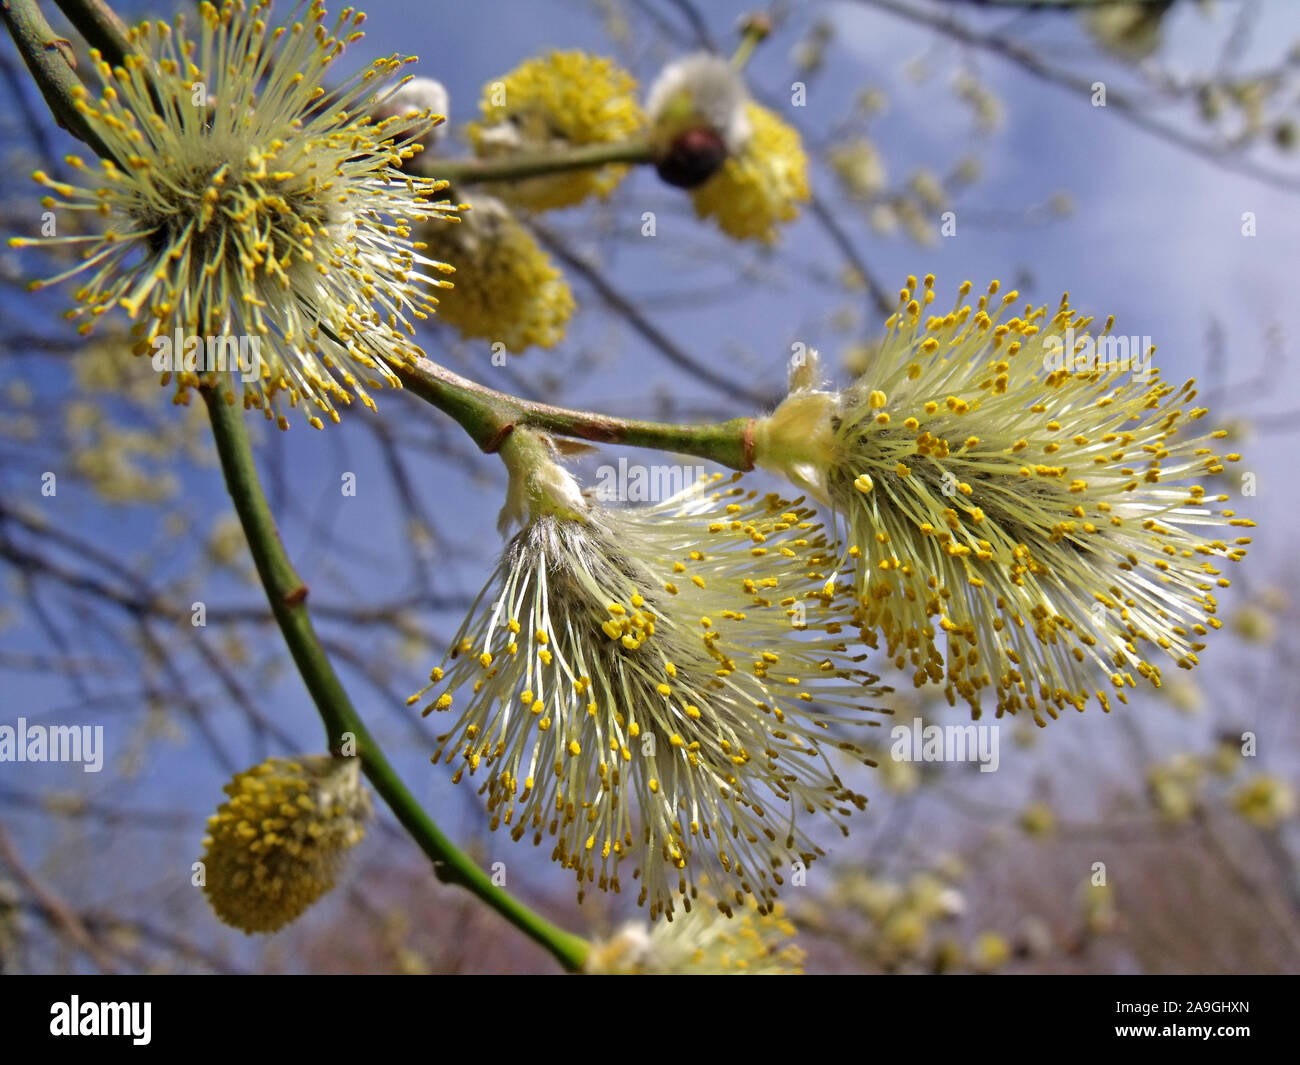 Germogli di fioritura di pussy willow,nella primavera,piccole specie del genere Salix (salici e sallows), un peloso amenti, Dalkeith, Scotland, Regno Unito Foto Stock